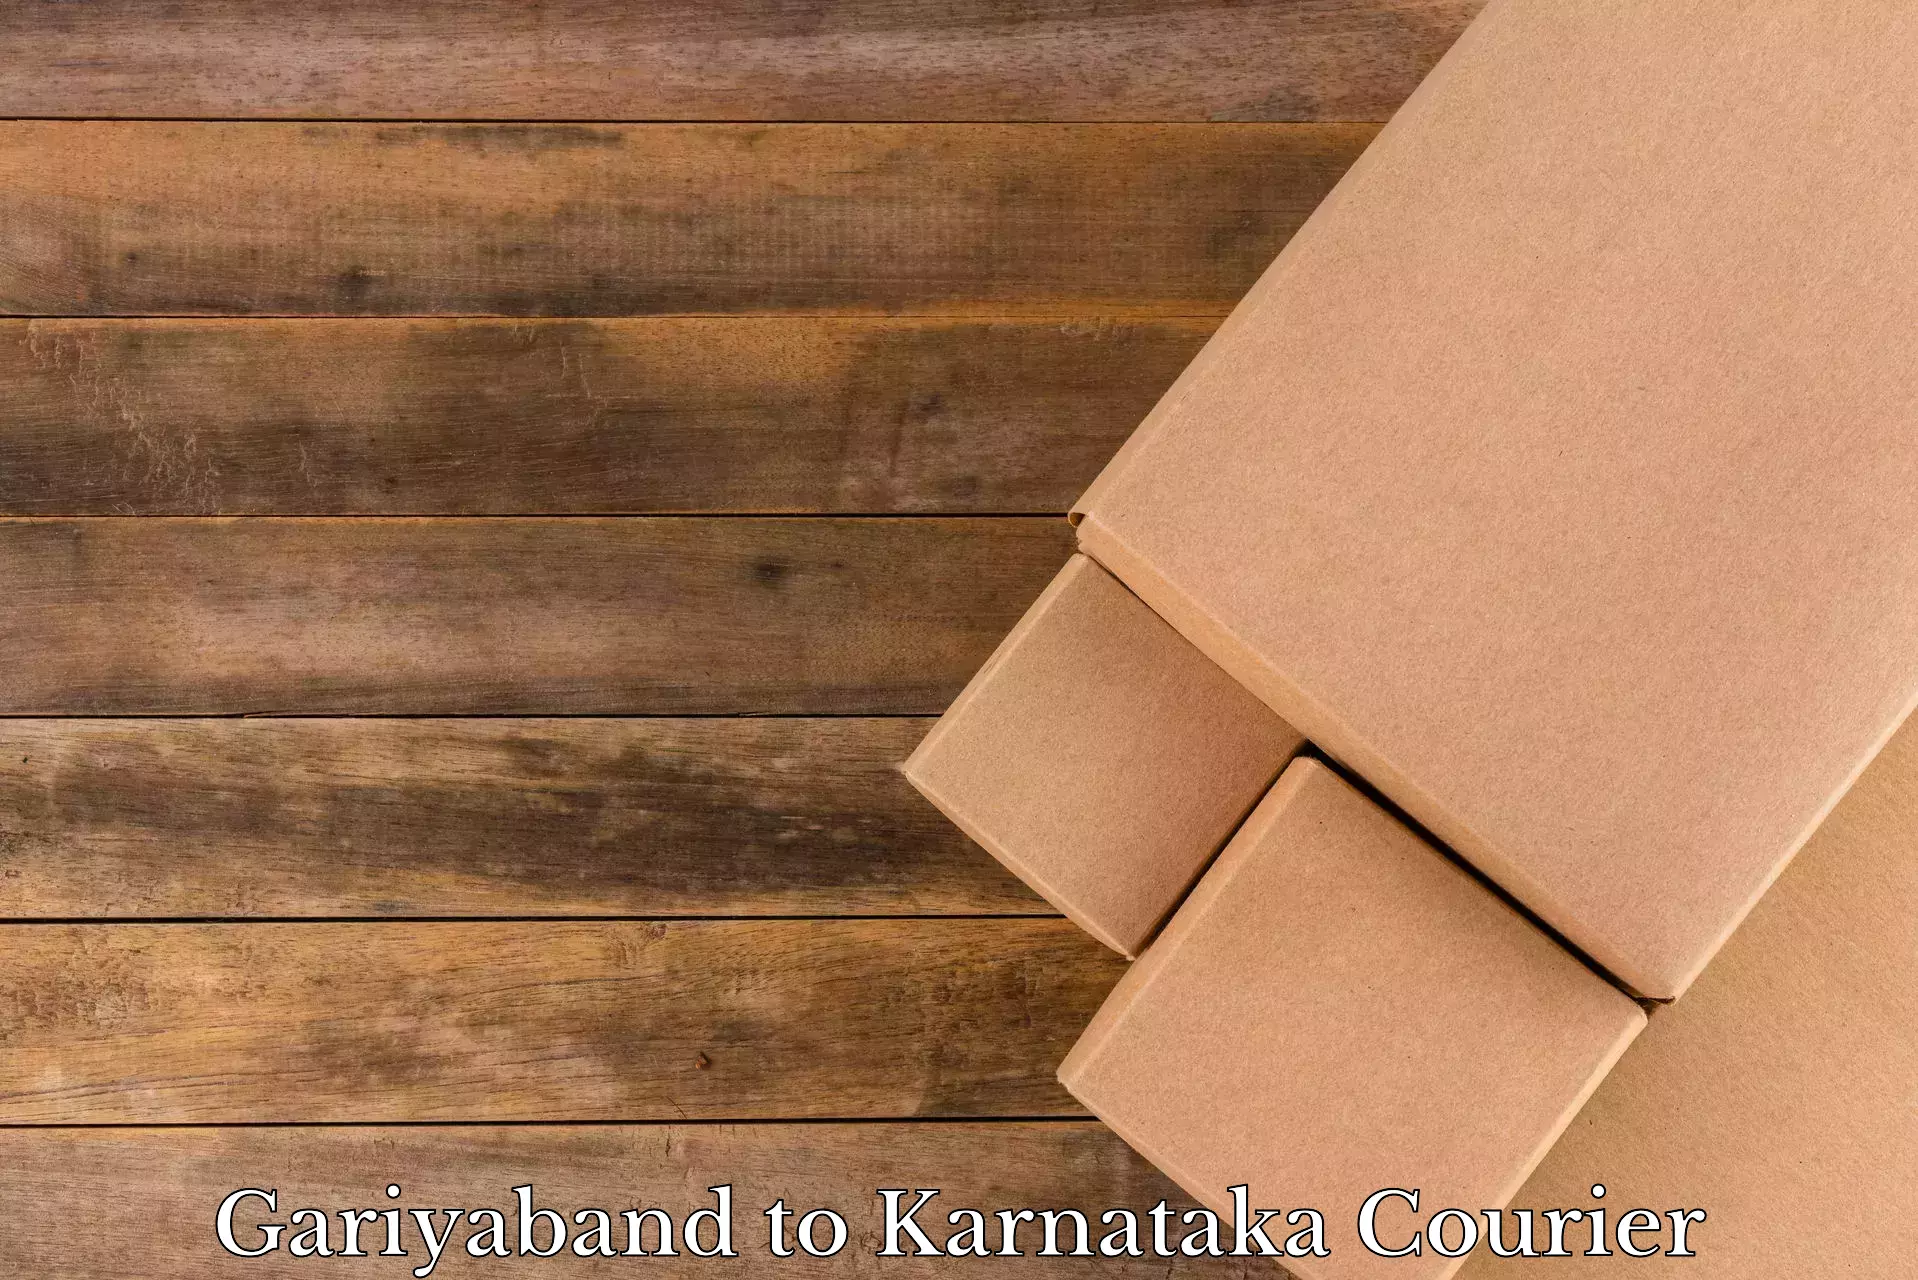 Home goods moving company Gariyaband to Karnataka